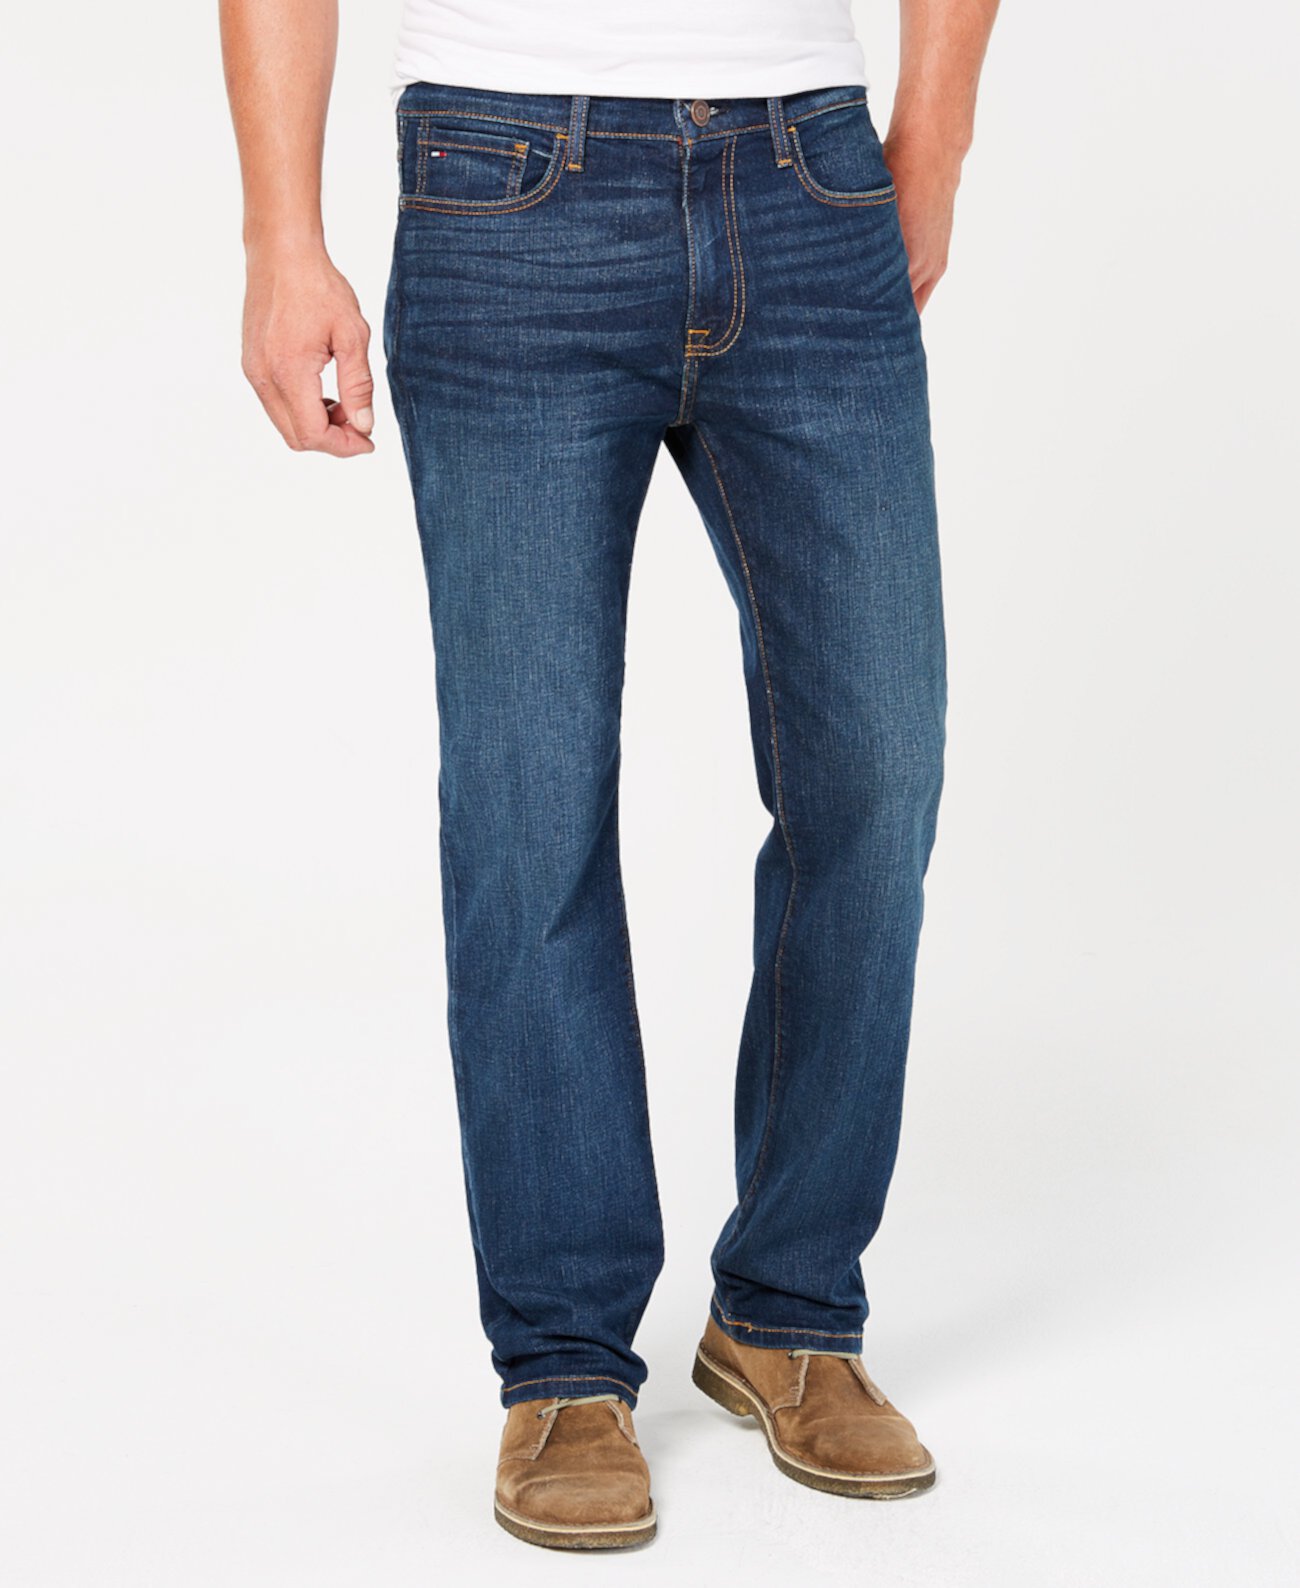 Мужские джинсы стрейч свободного кроя большого и высокого роста, созданные для Macy's Tommy Hilfiger